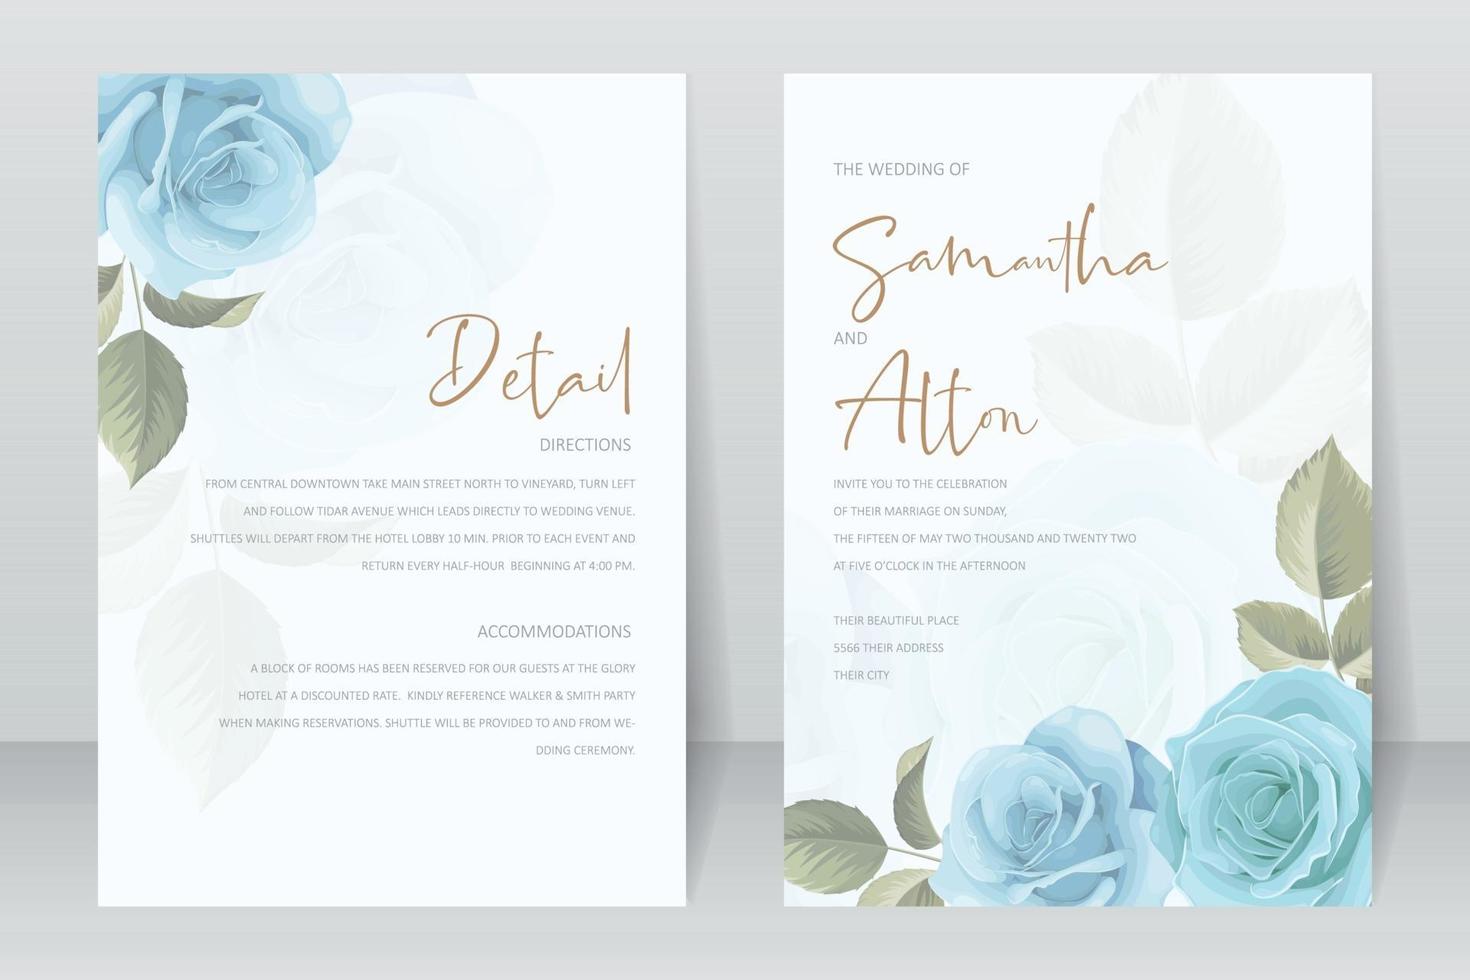 Plantilla de tarjeta de invitación de boda con decoración de rosas y hojas. vector